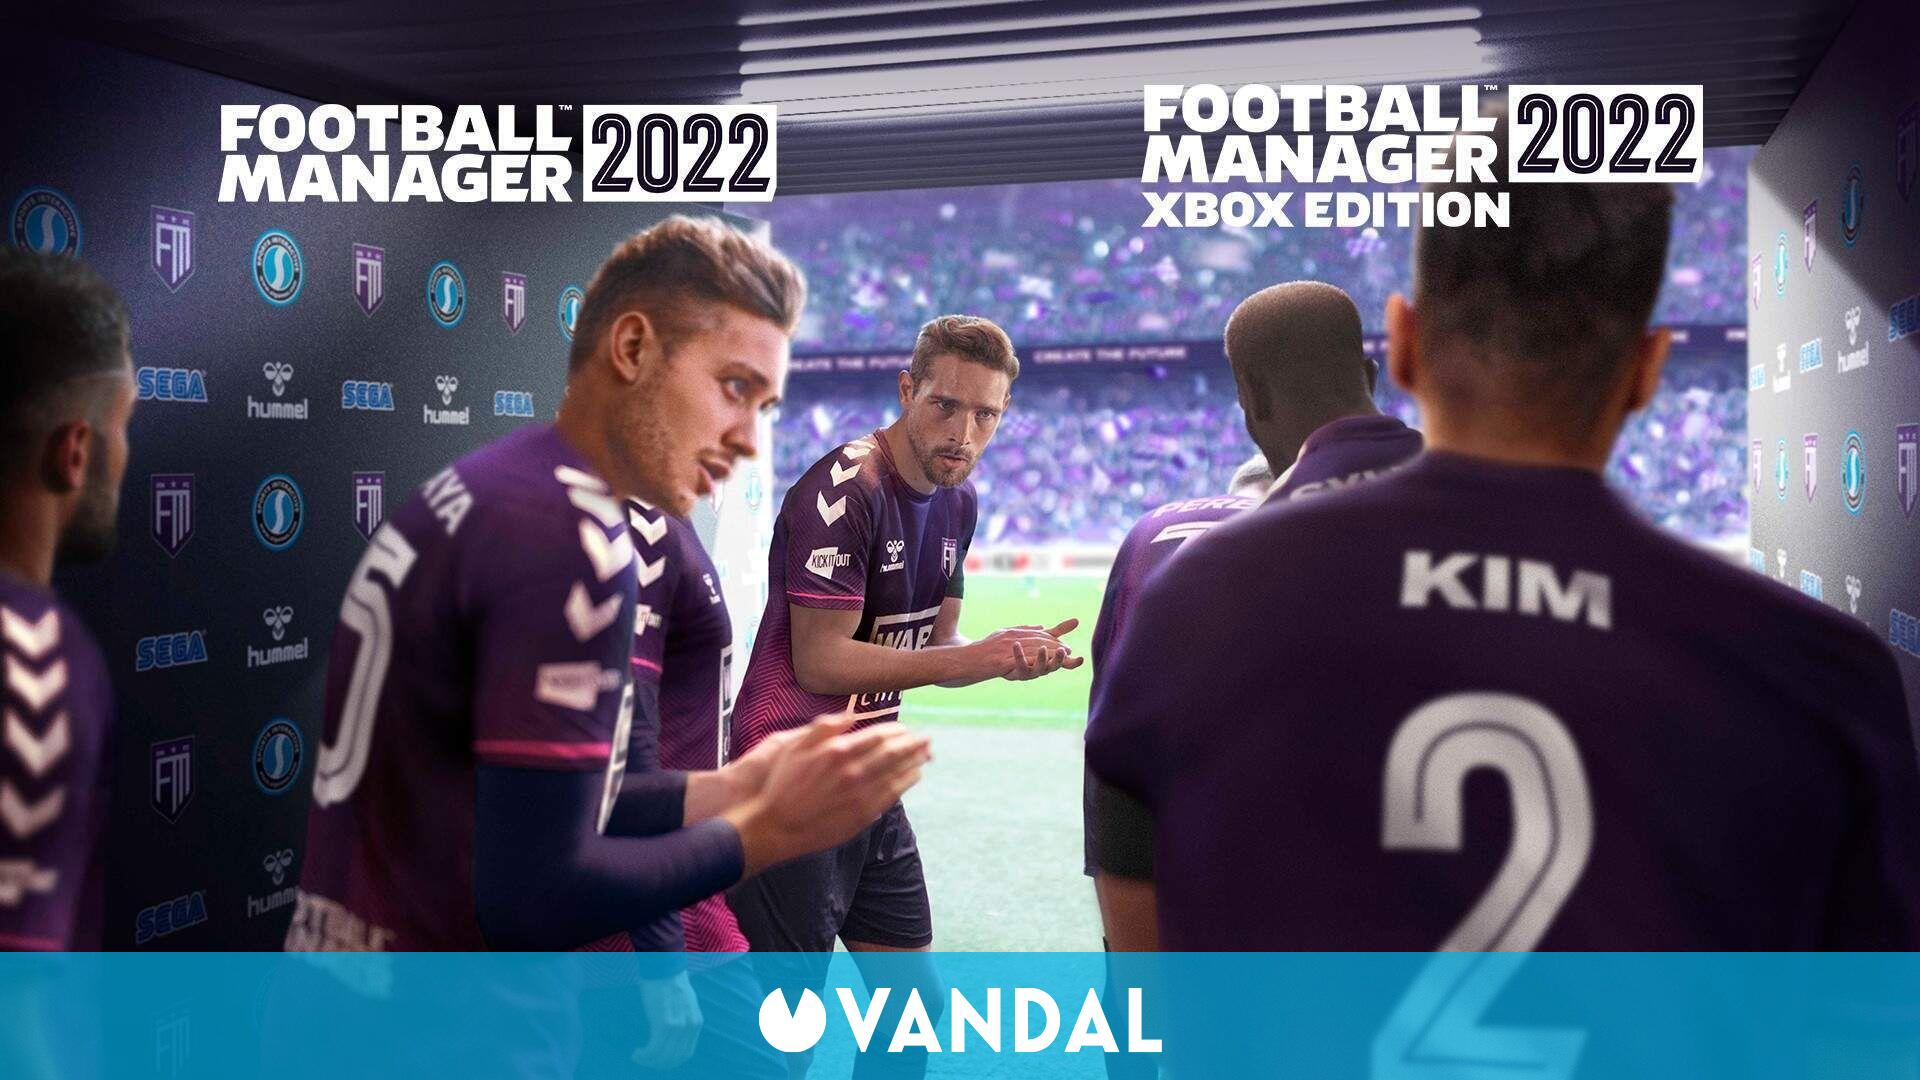 Football Manager 2022 debutará el 9 de noviembre en Xbox, PC, iOS, Android Game Pass - Vandal